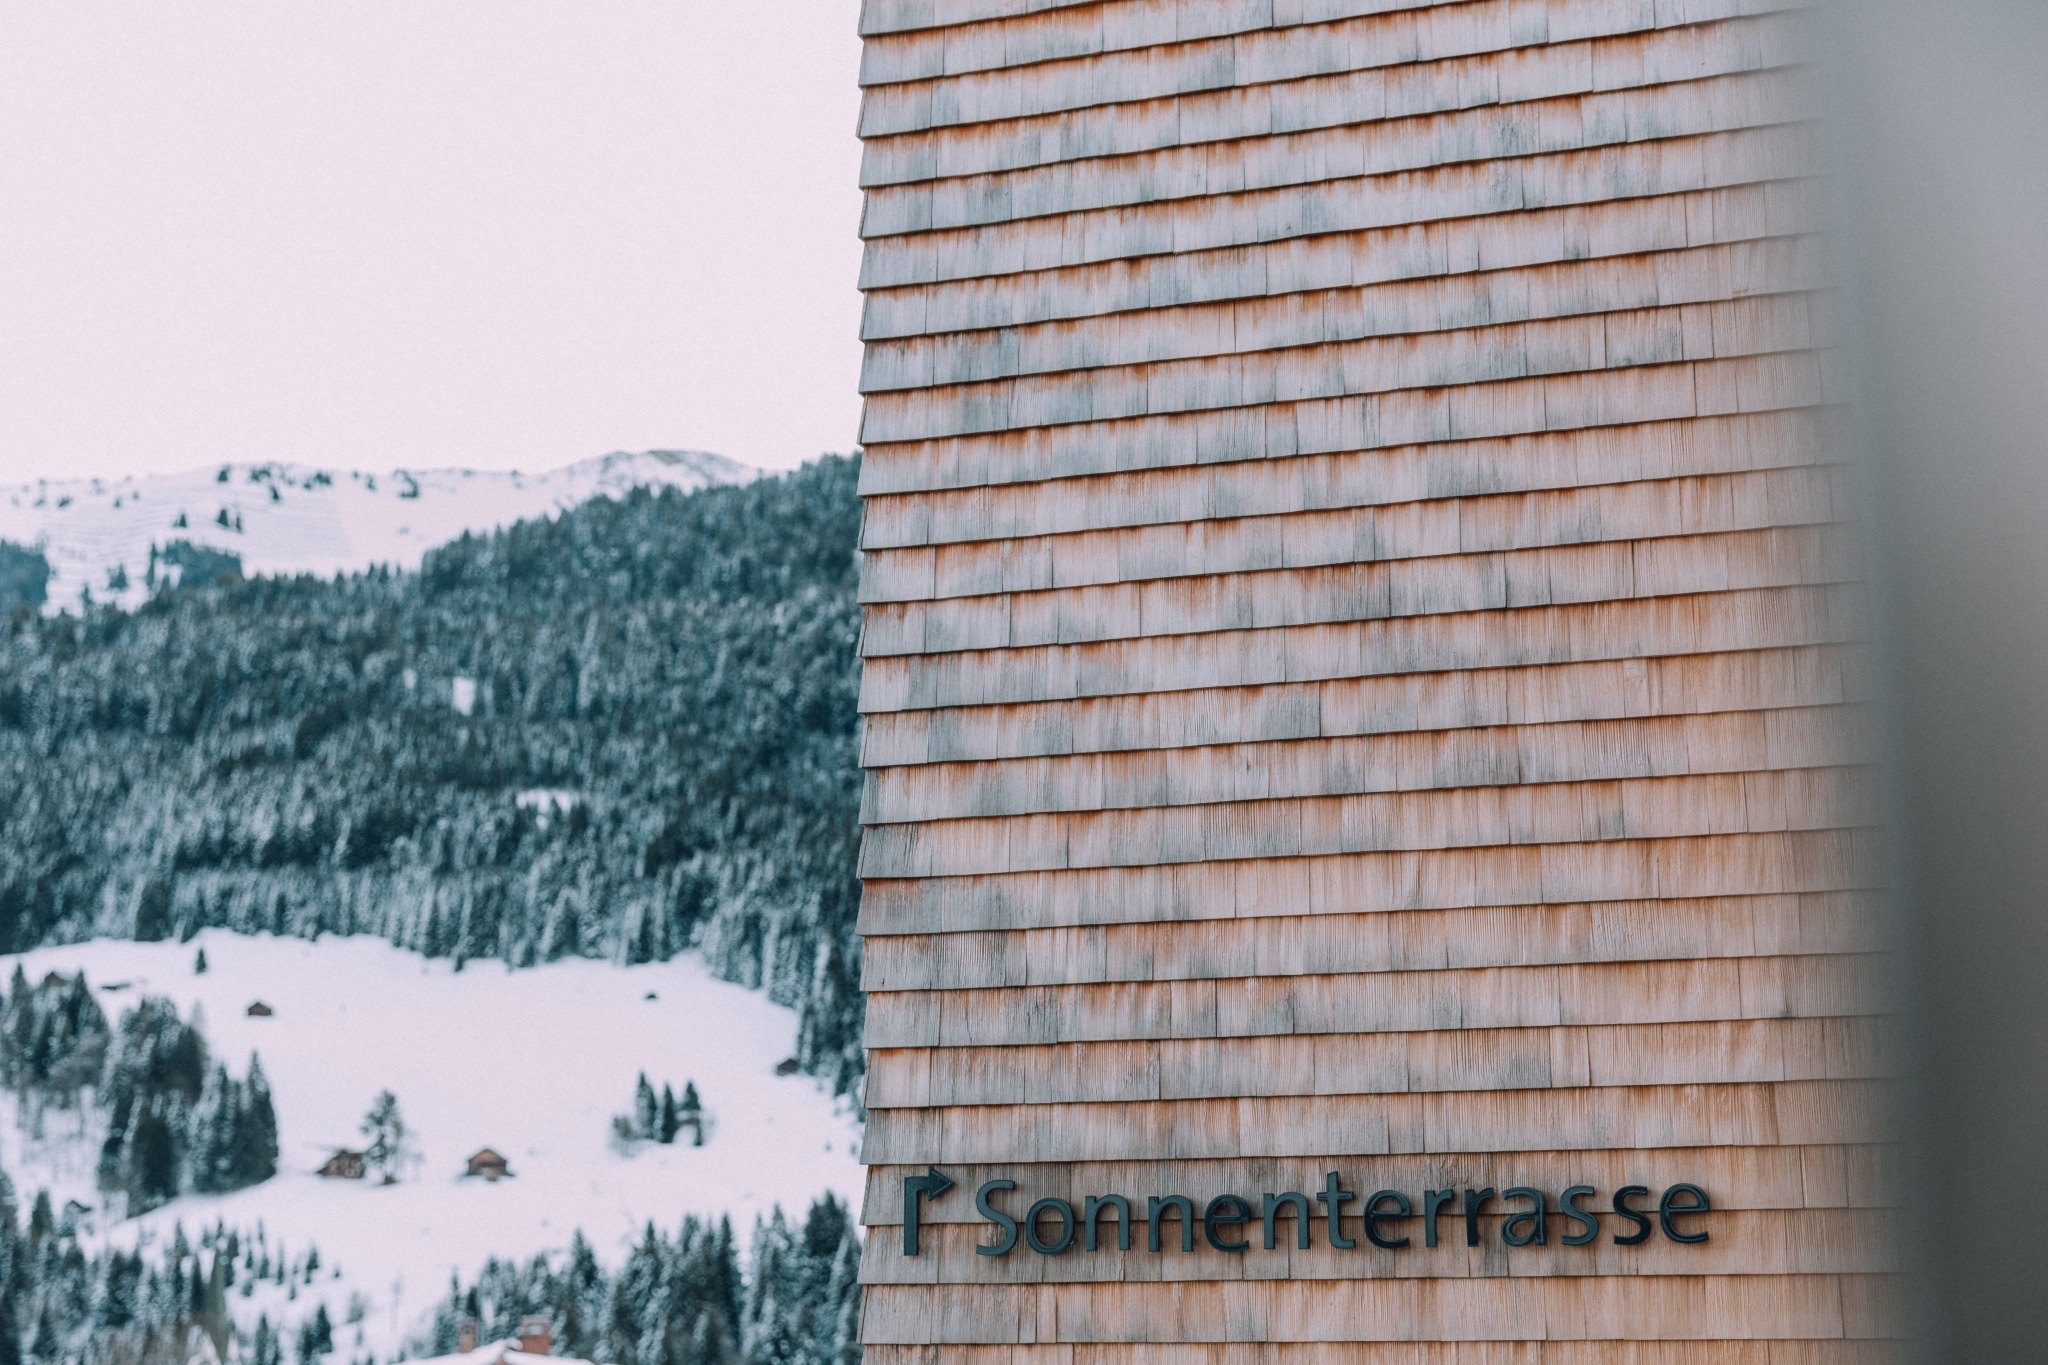 Beschriftung mit Pfeil: Sonnenterasse Fotografiert im Winter an Hausfassade